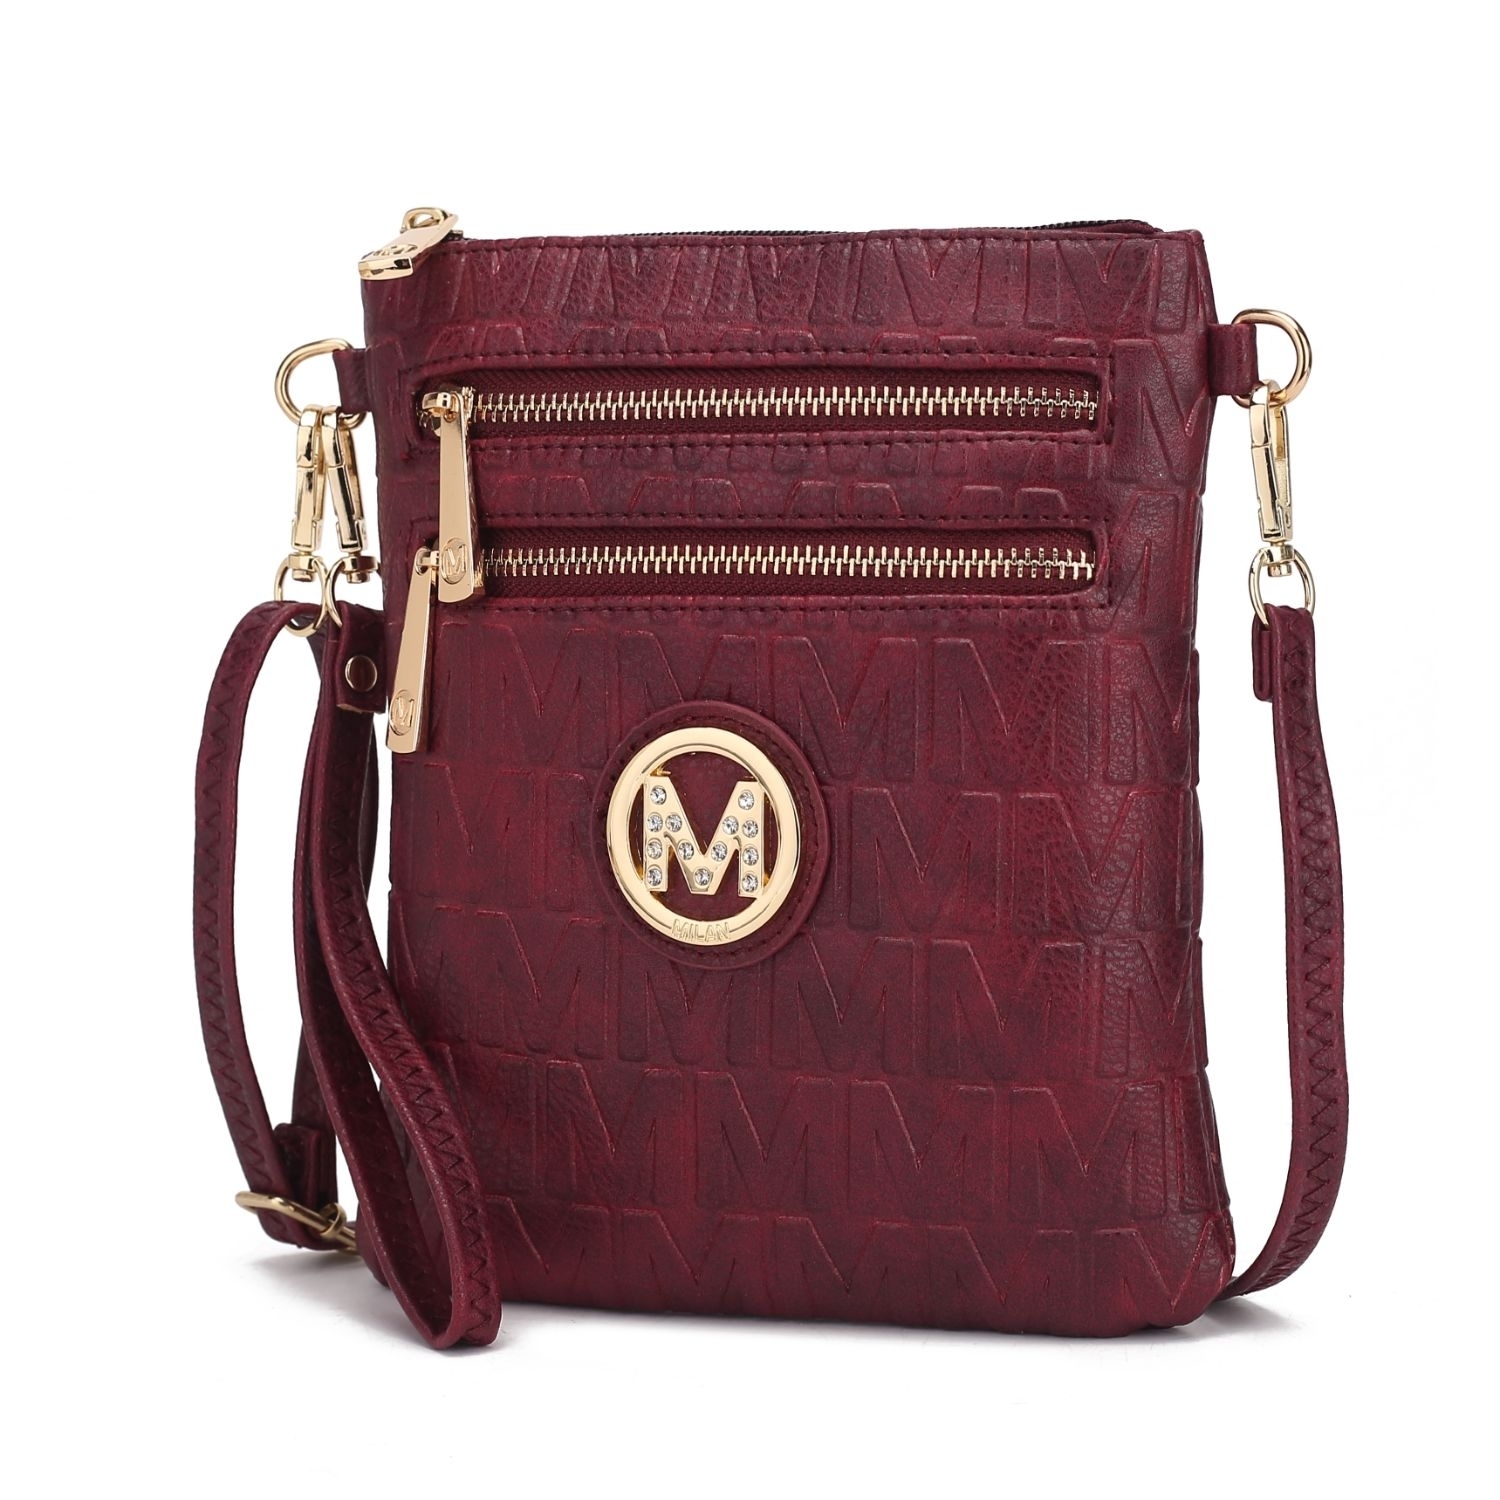 MKF Collection Scarlett Crossbody Handbag By Mia K. - Burgundy